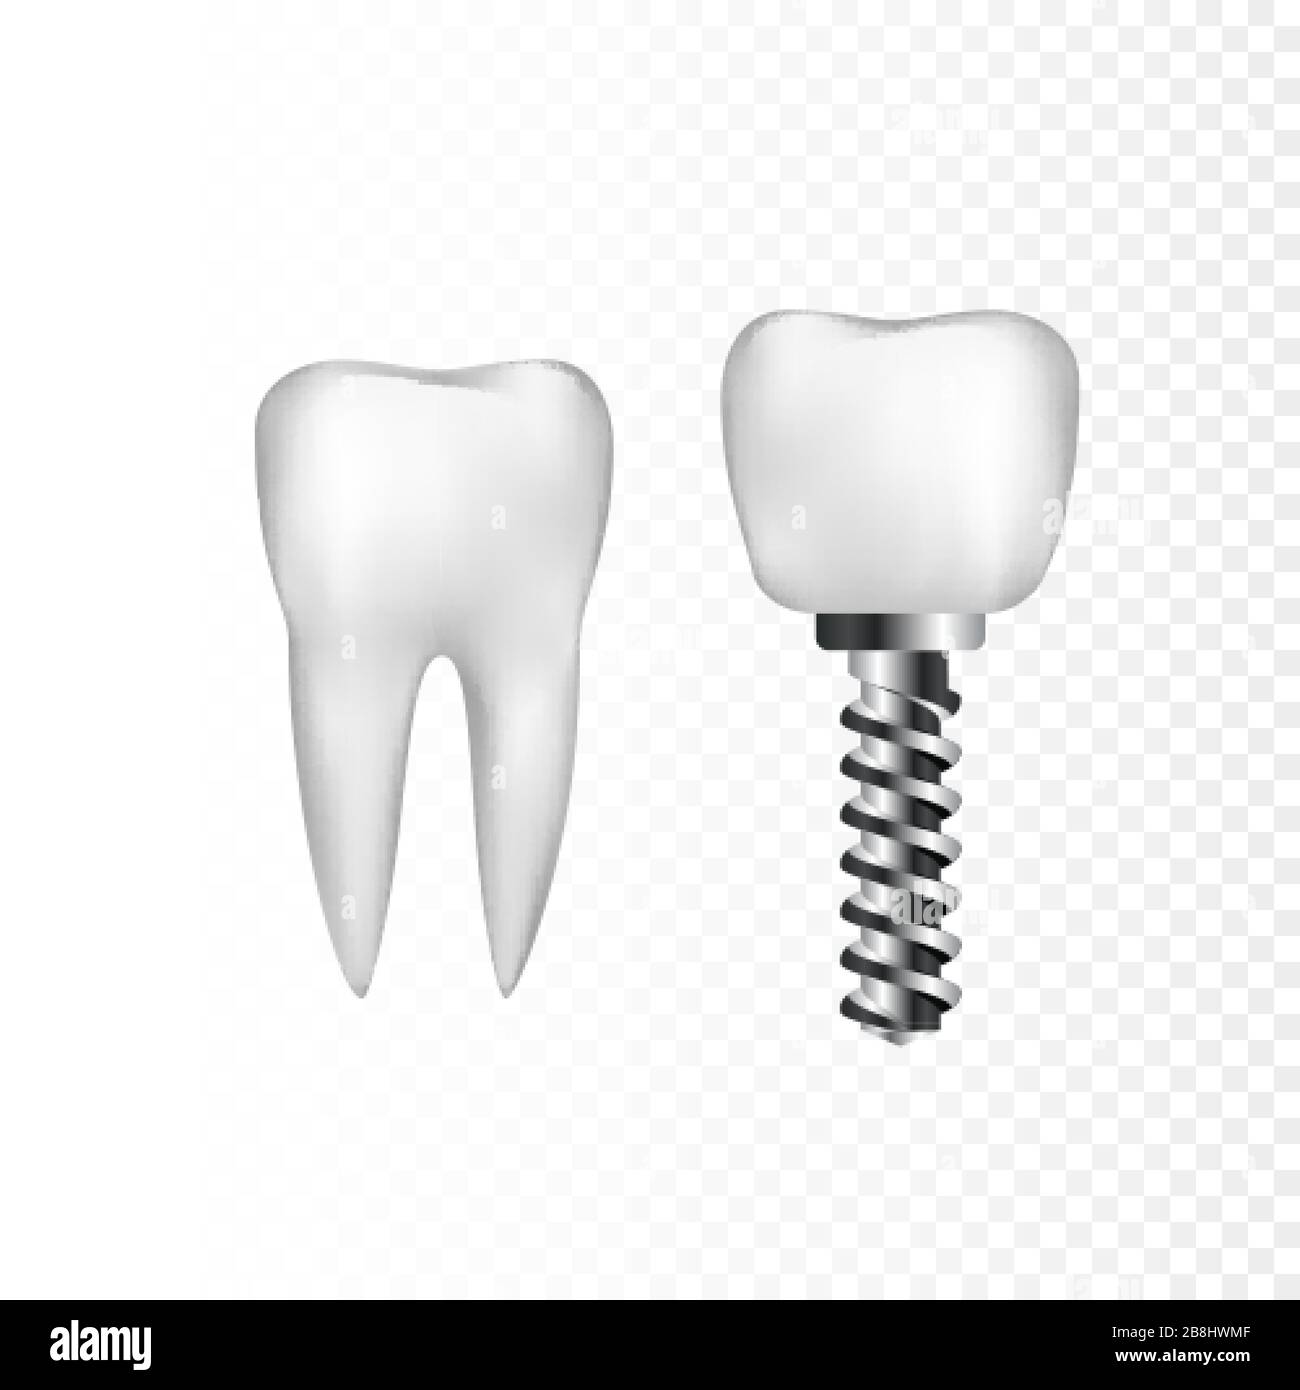 Dent blanche et implant sains avec vis en acier. Dentisterie et soins dentaires. Illustration vectorielle isolée sur fond transparent Illustration de Vecteur